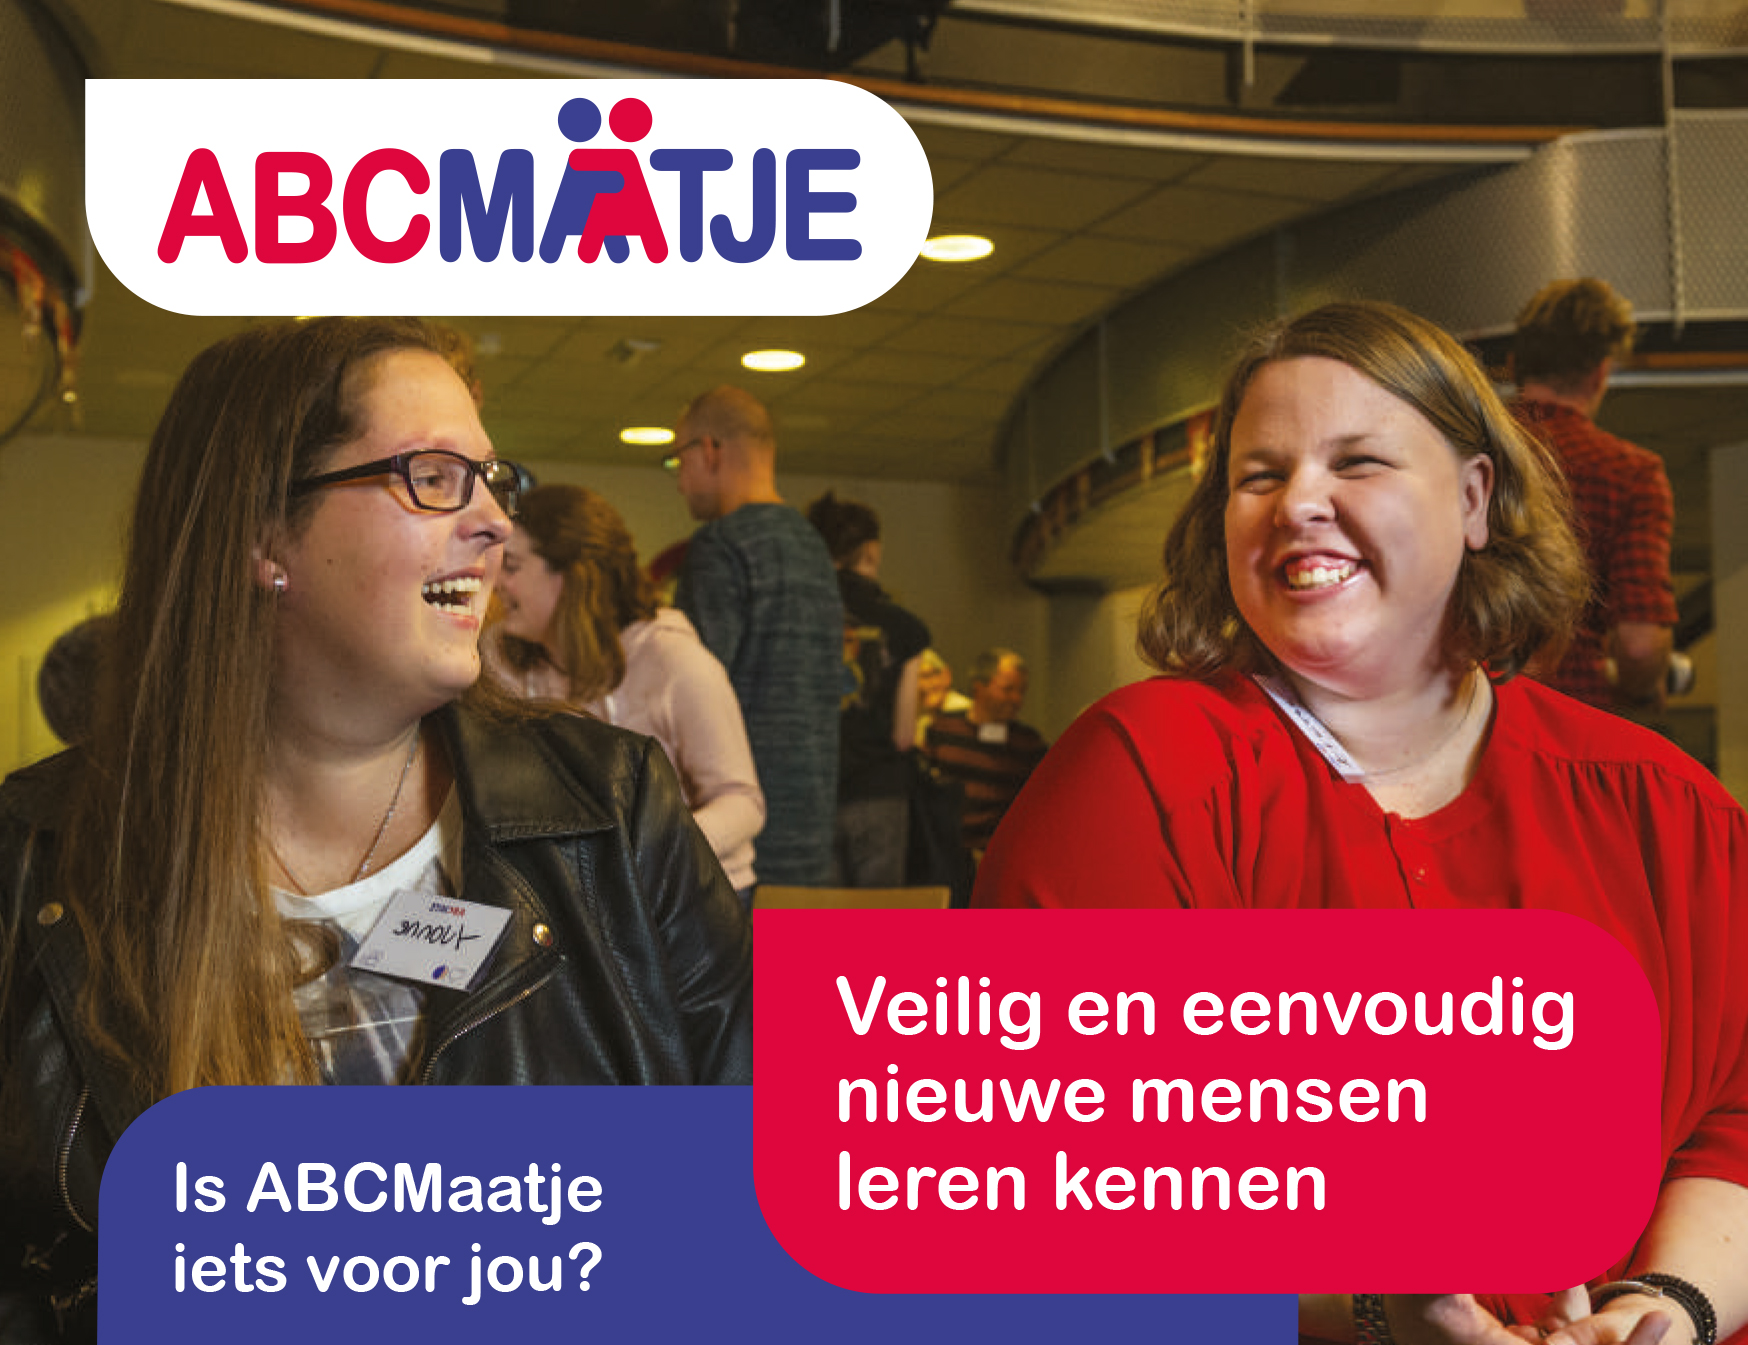 Met ABCMaatje kun je veilig en eenvoudig nieuwe mensen leren kennen in Den Haag.